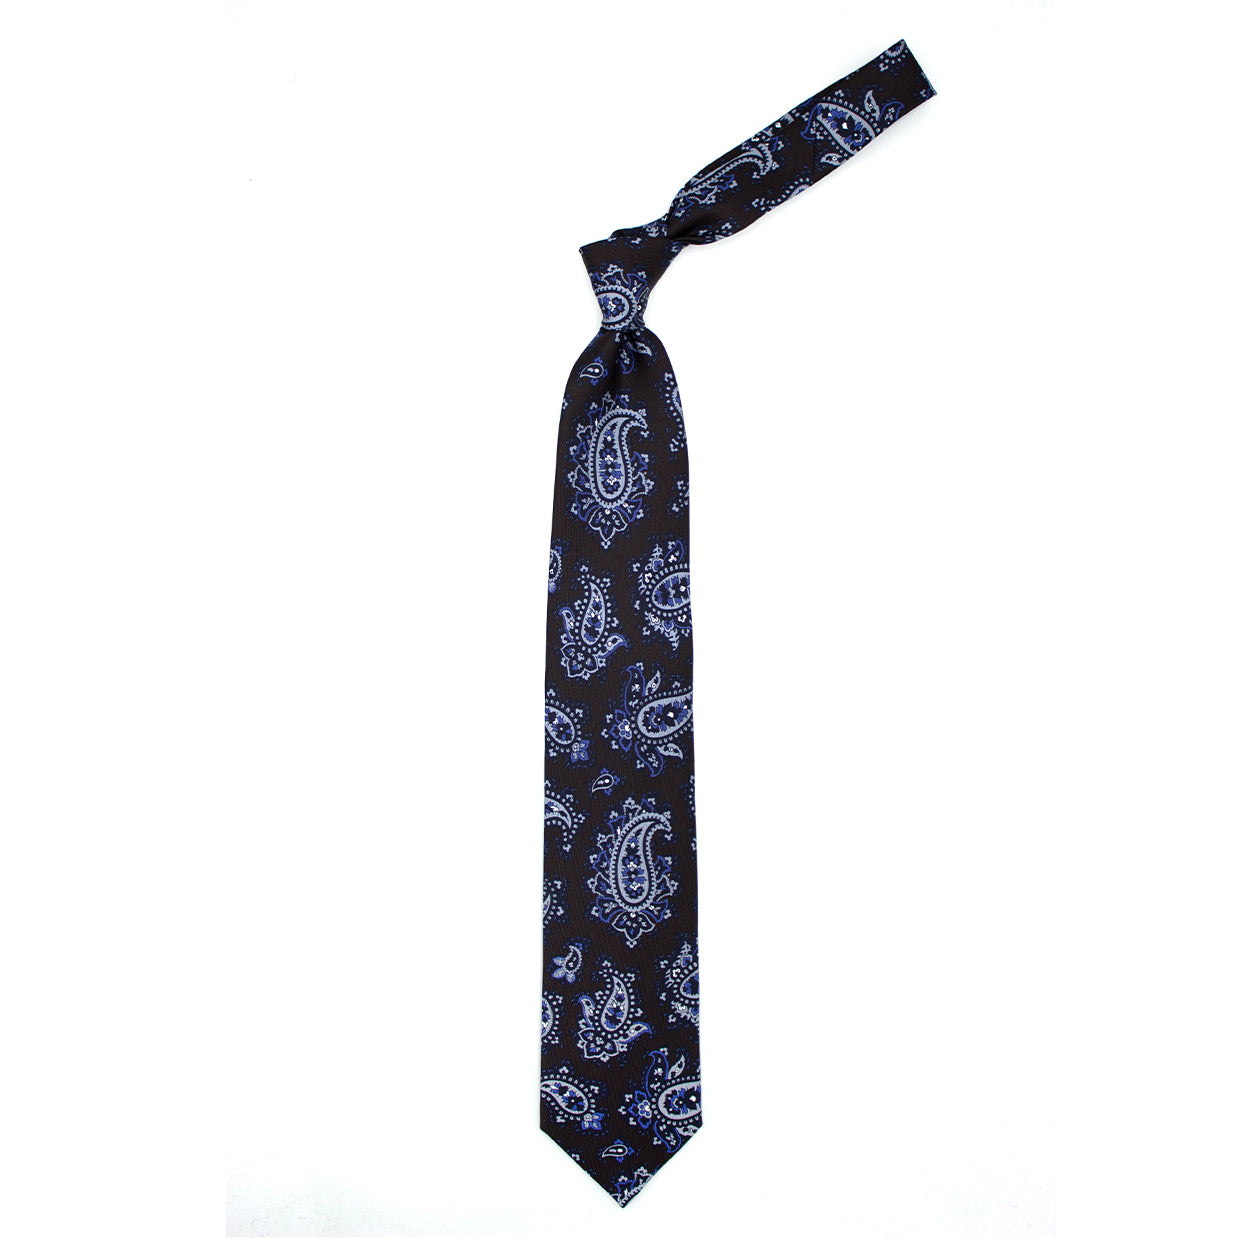 Cravatta marrone con paisley grigi, azzurri e neri